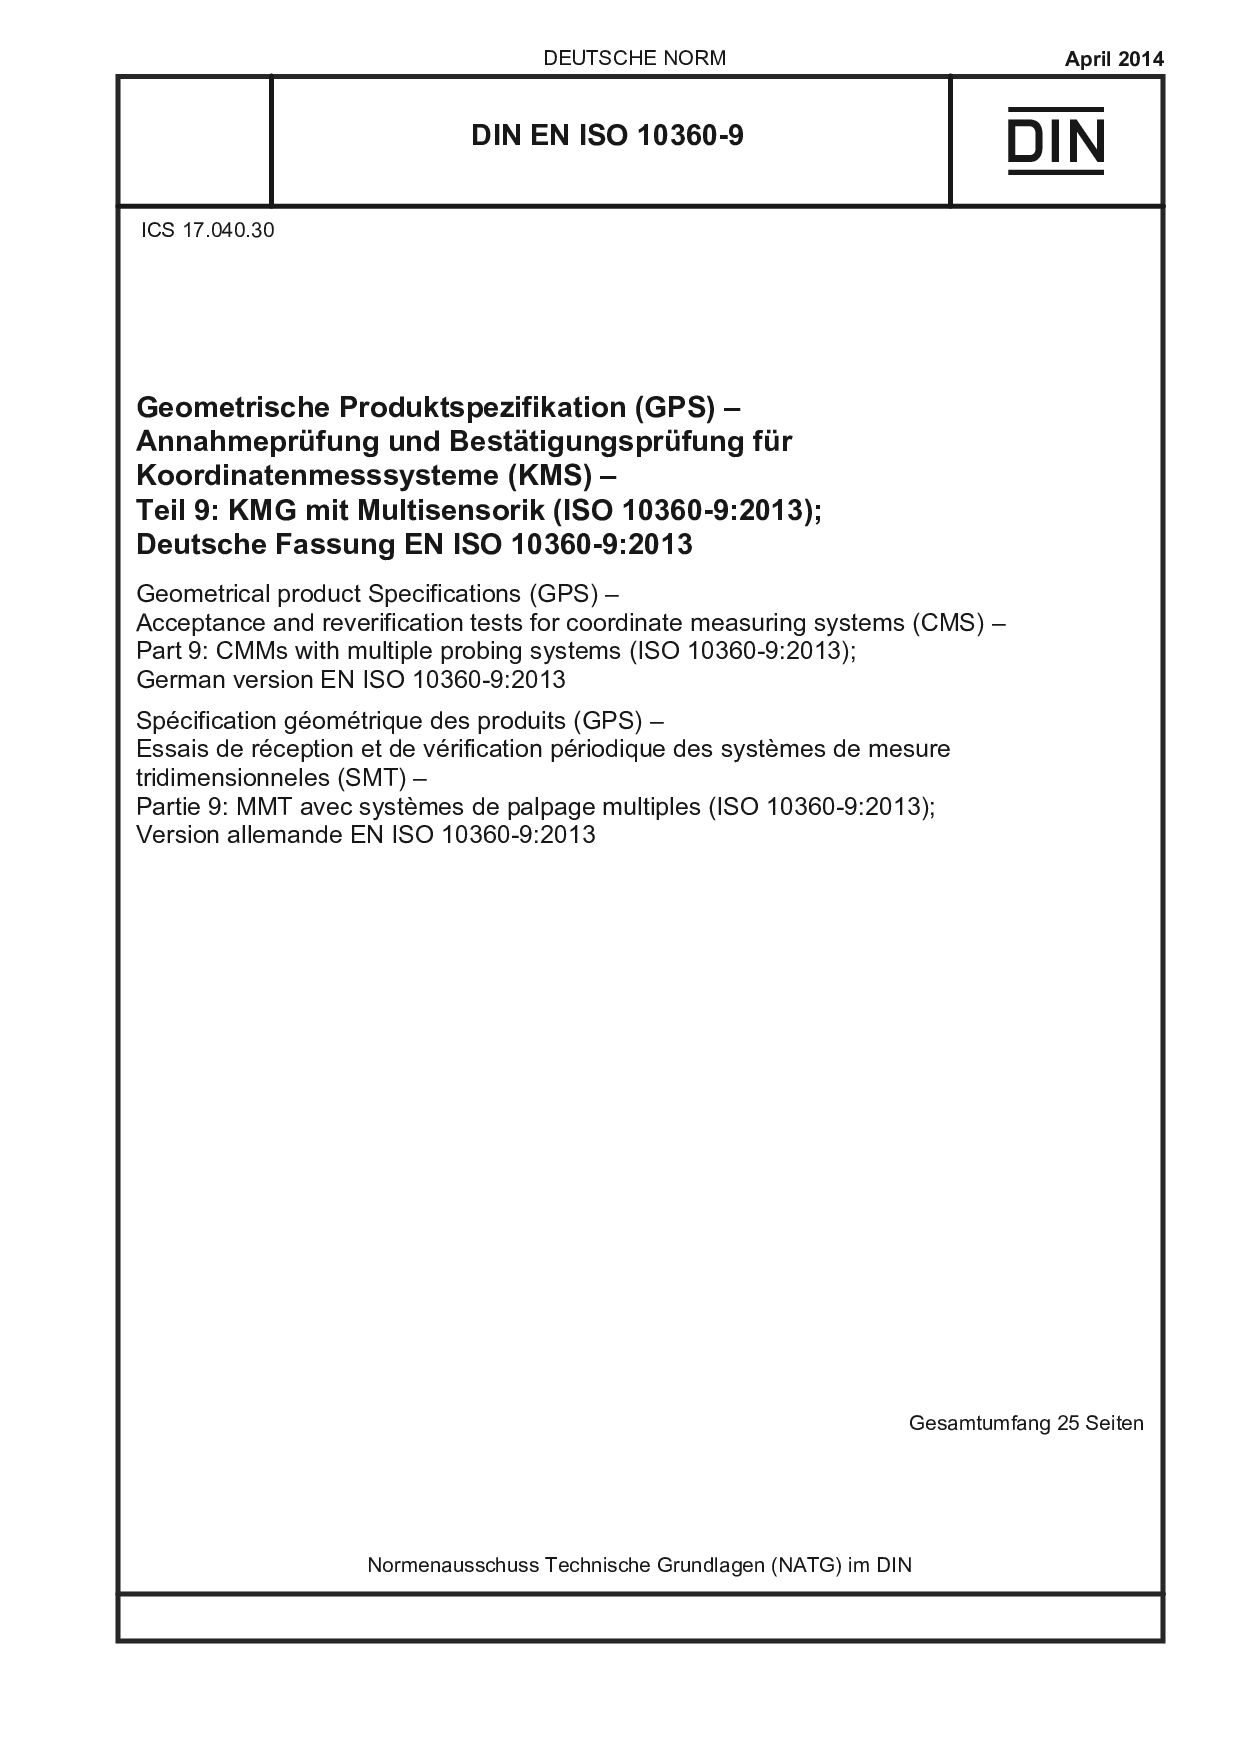 DIN EN ISO 10360-9:2014